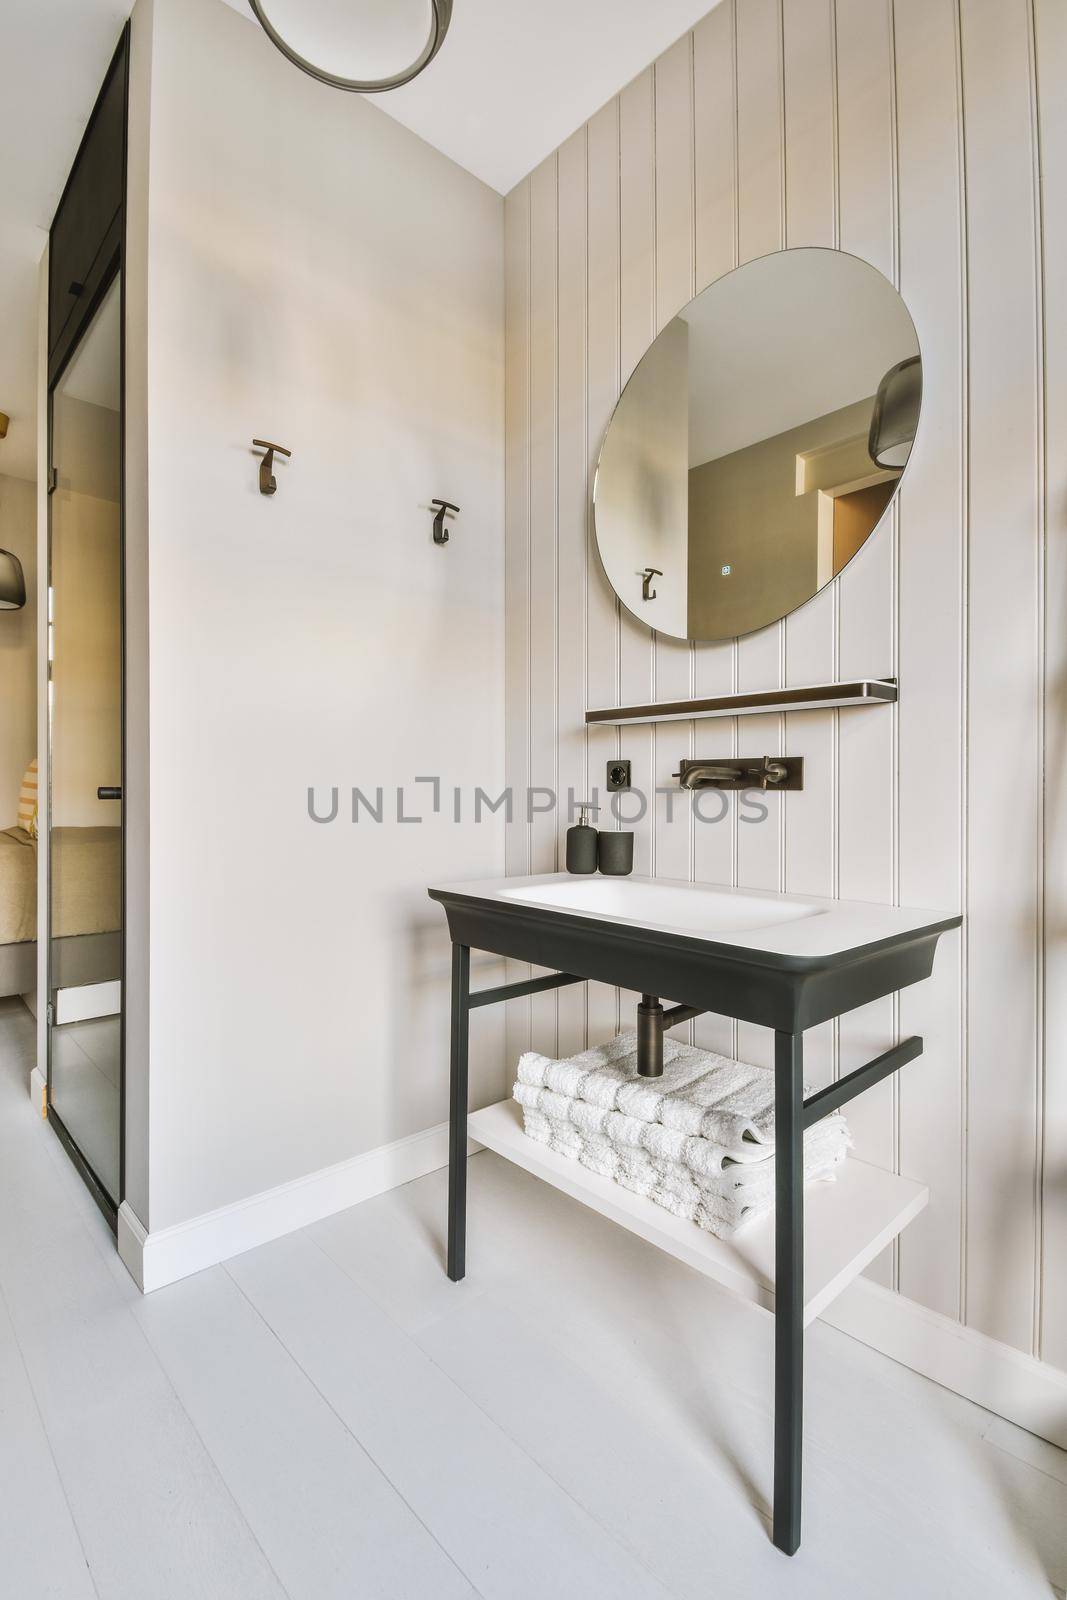 Interior design of beautiful and elegant bathroom